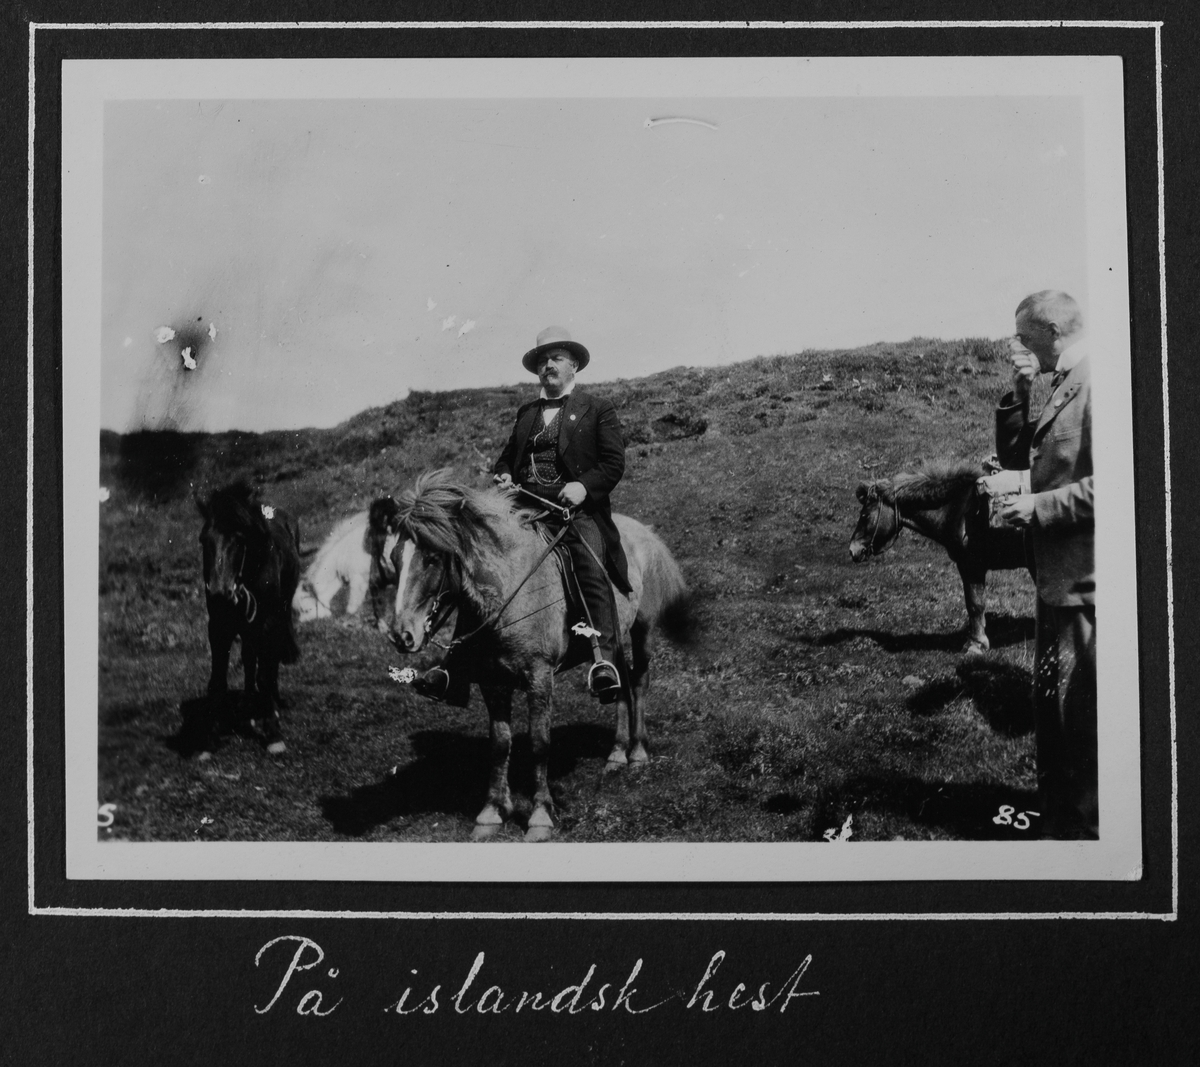 Fra 1000 årsfesten for Alltinget på Island i 1930. På islandsk hest.